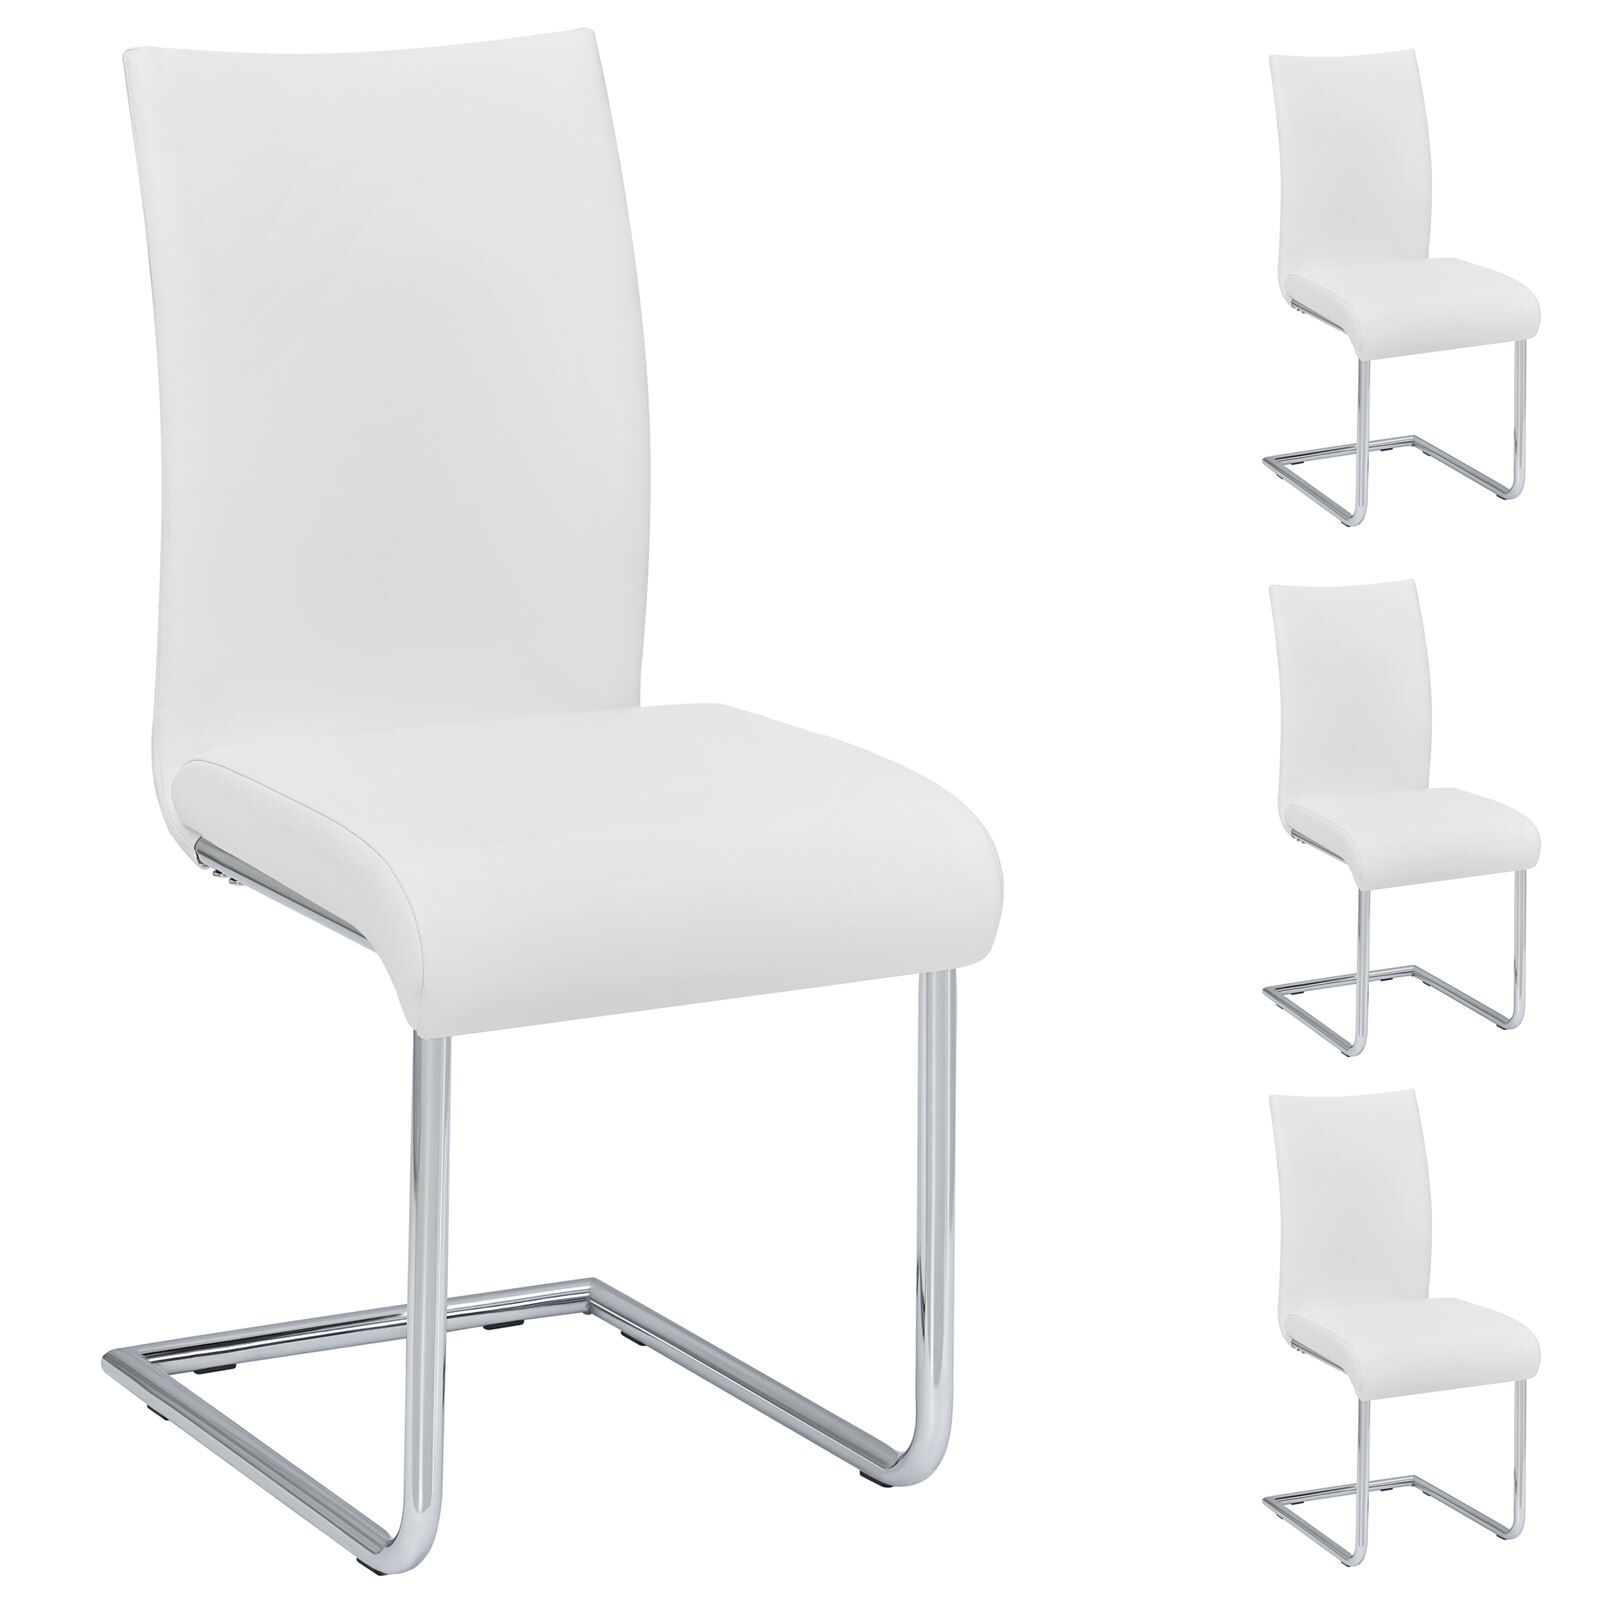 IDIMEX Lot de 4 chaises ALADINO, en synthétique blanc